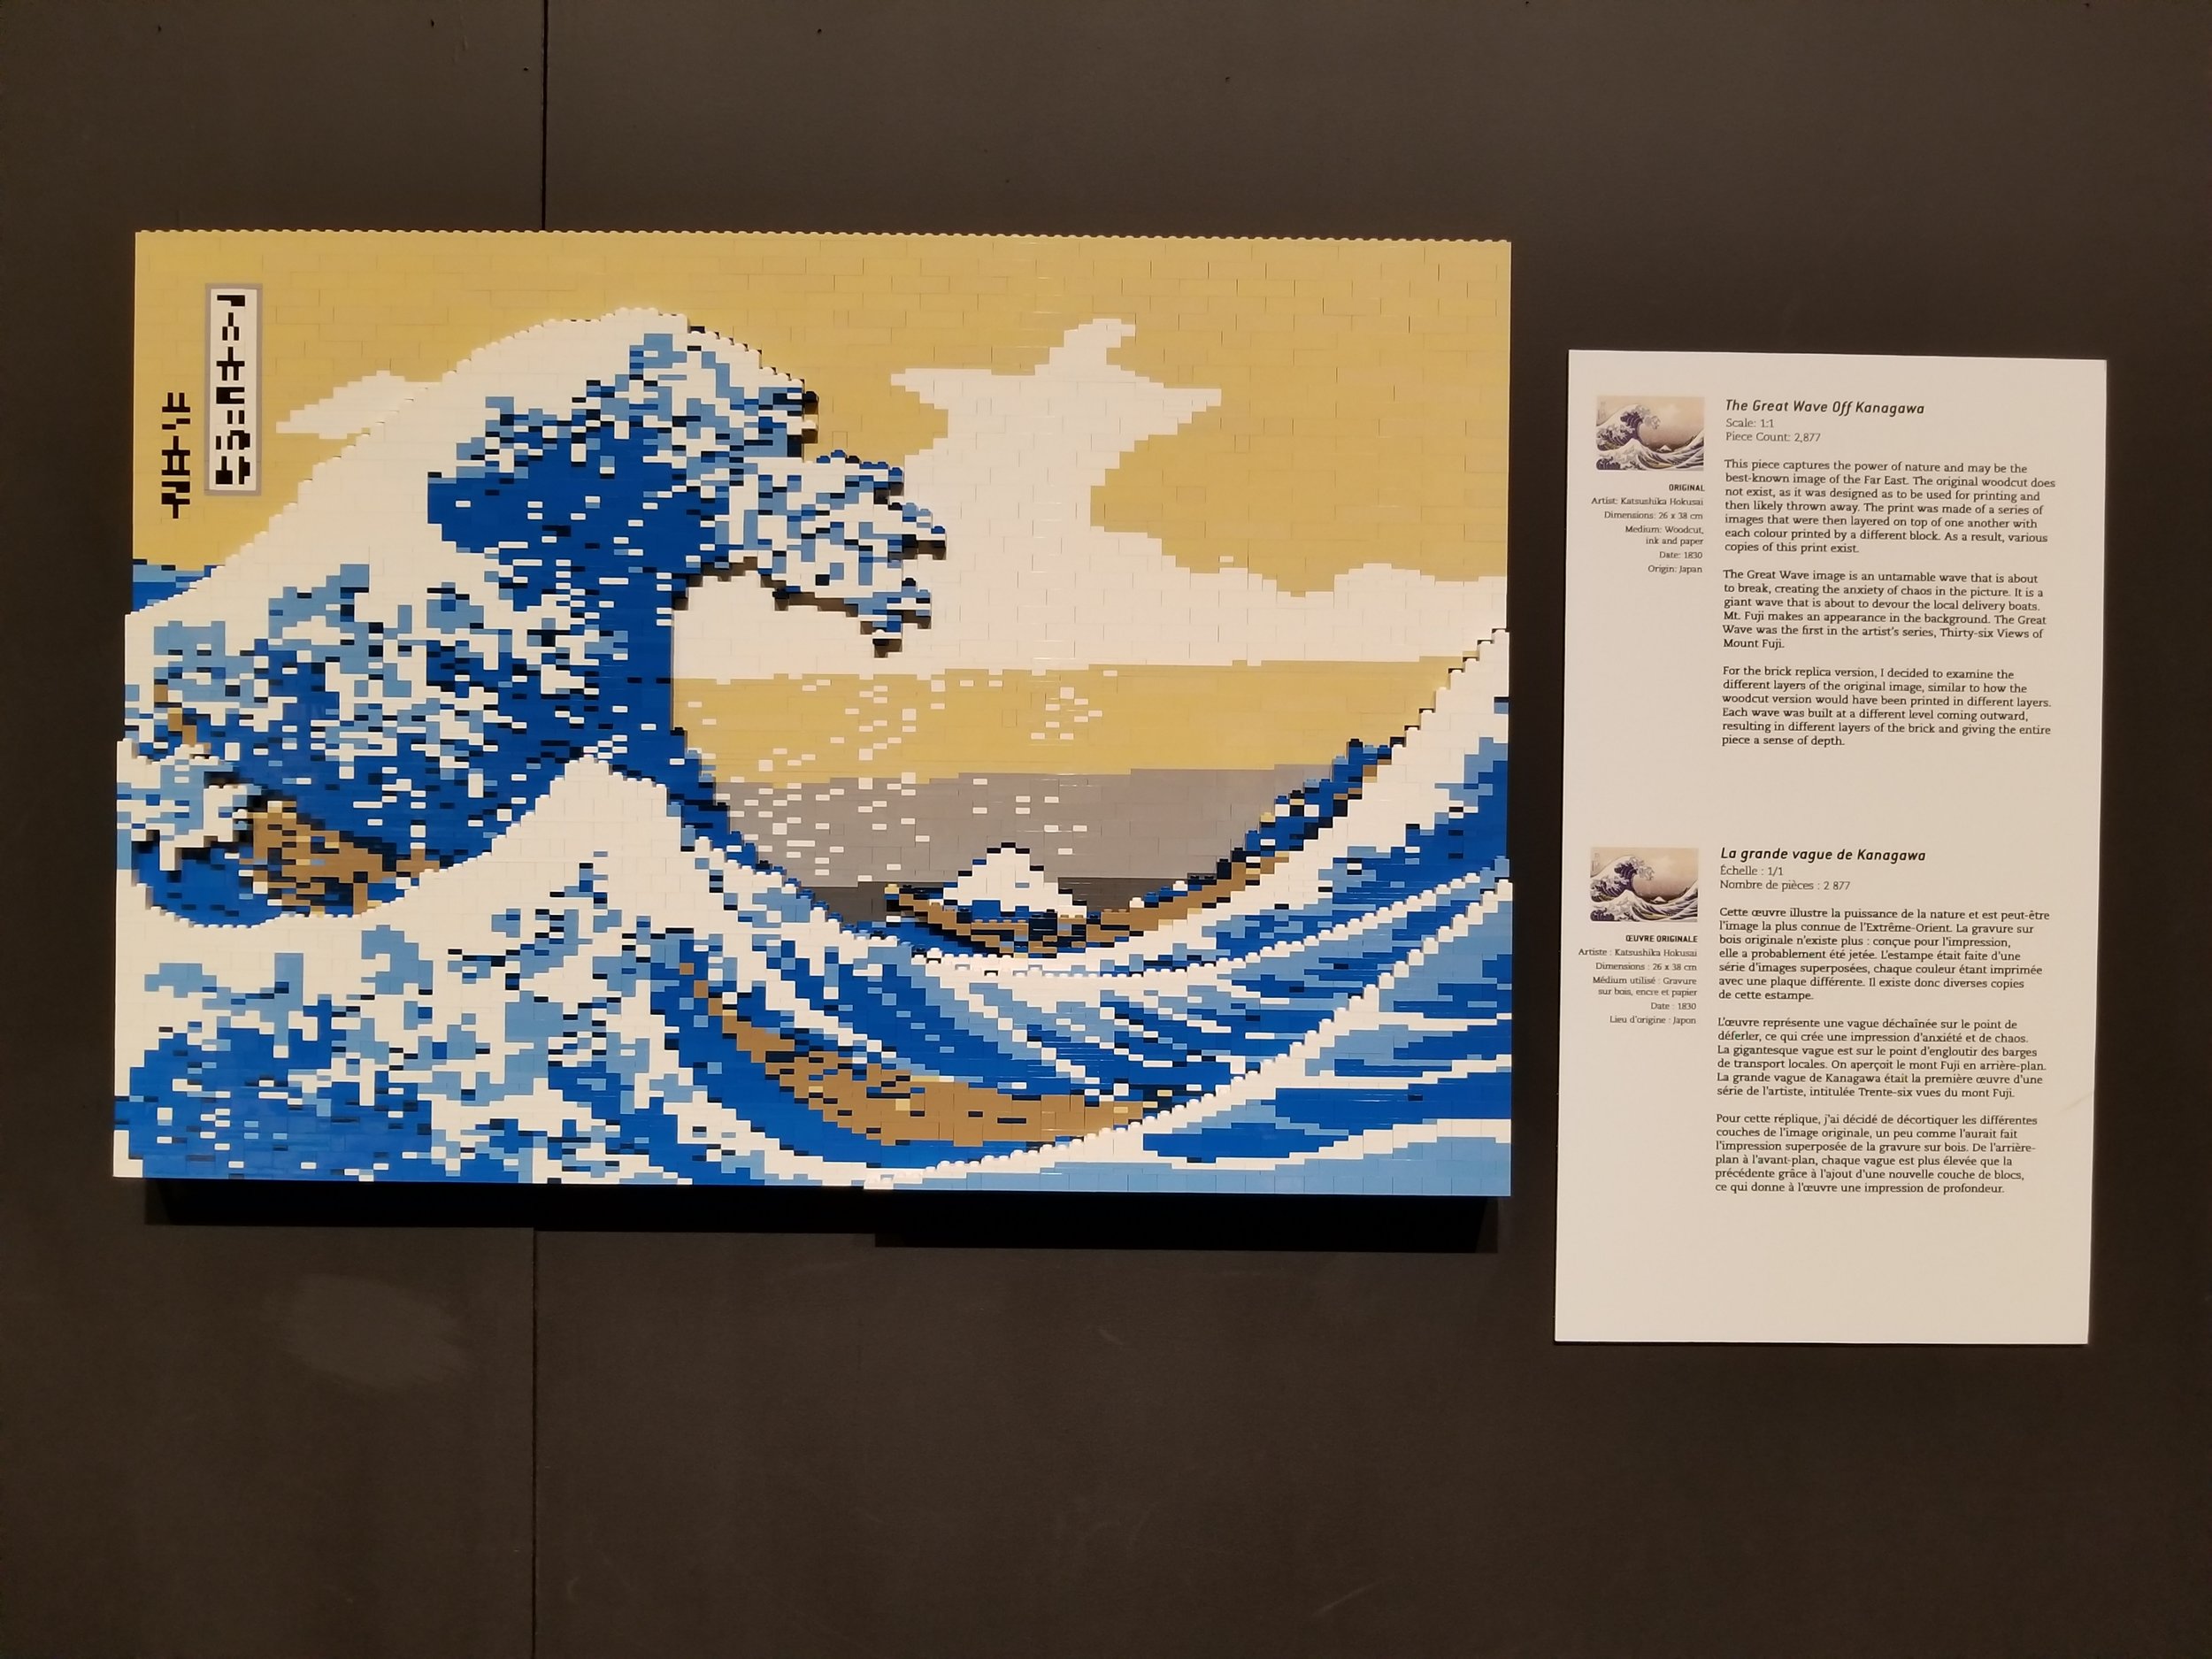 Focus – La grande vague de Kanagawa de Hokusai, 1830 - Information